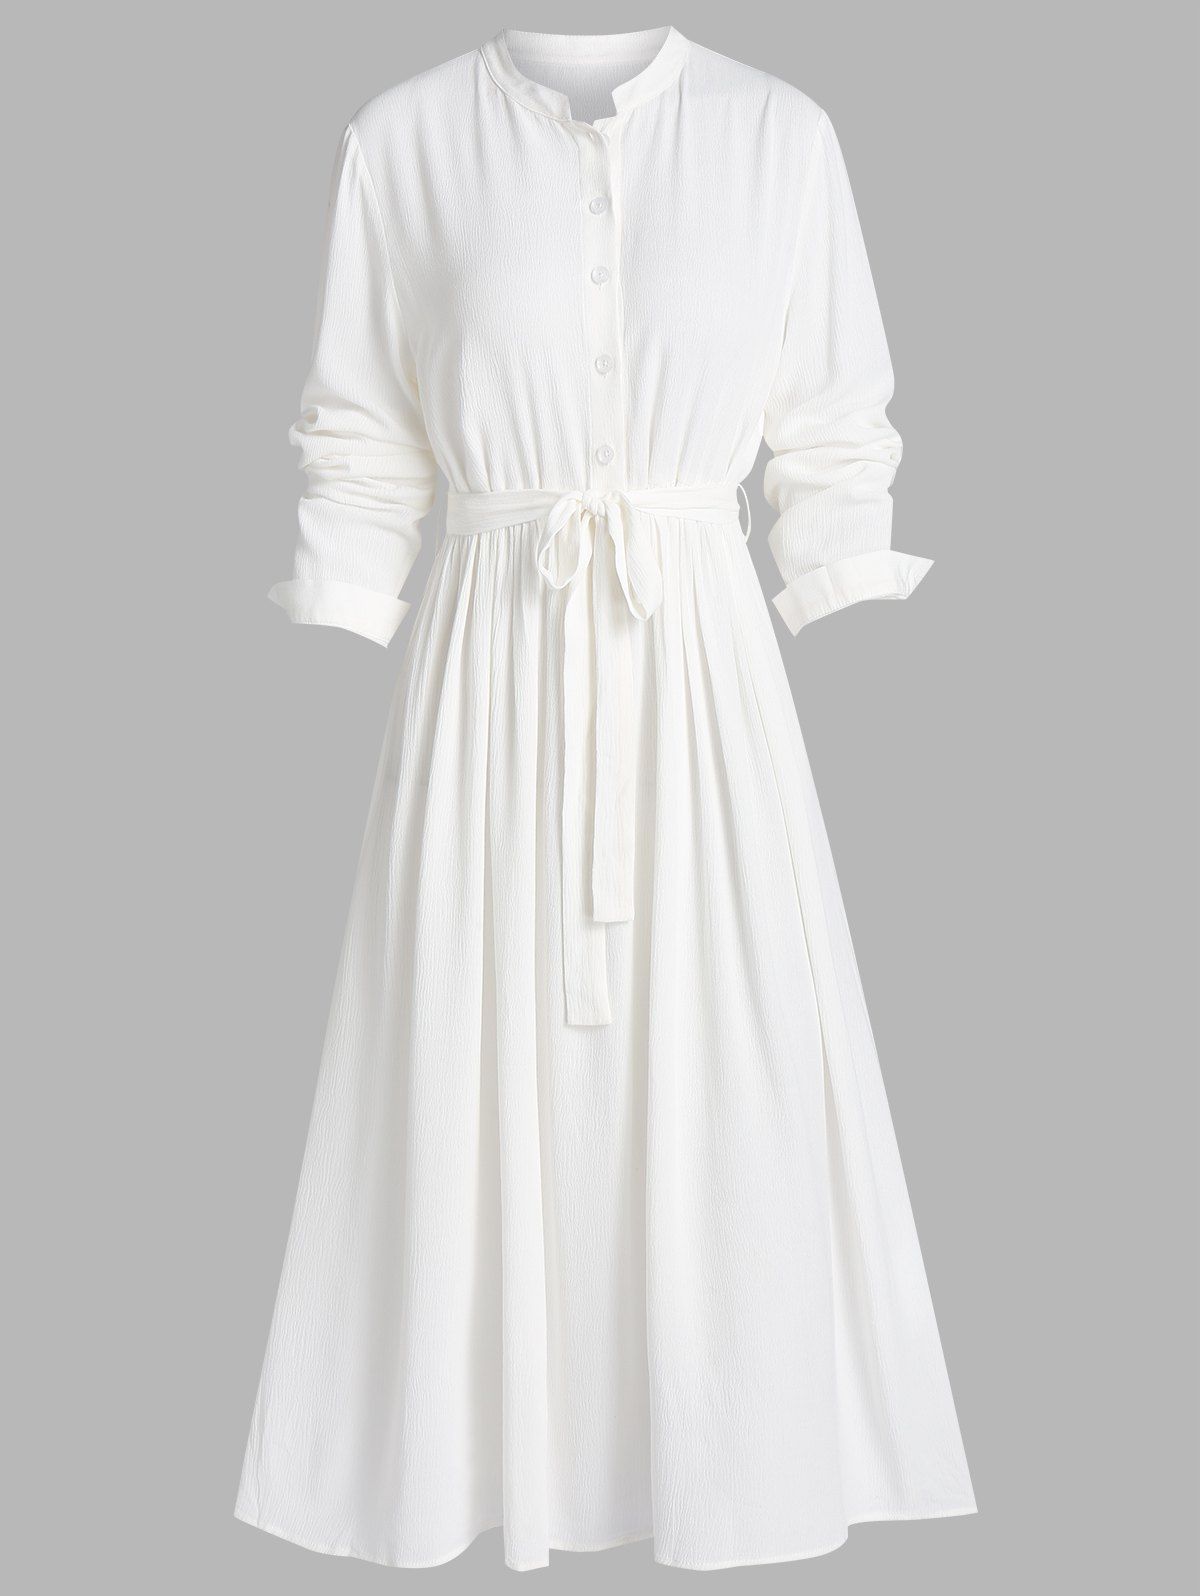 Plain Bowknot Belt Stand Collar Button A Line Shirt Dress - WHITE 2XL